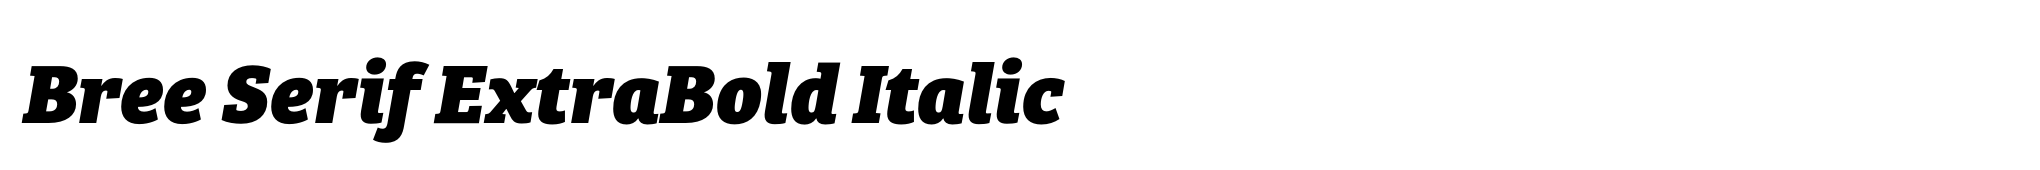 Bree Serif ExtraBold Italic image